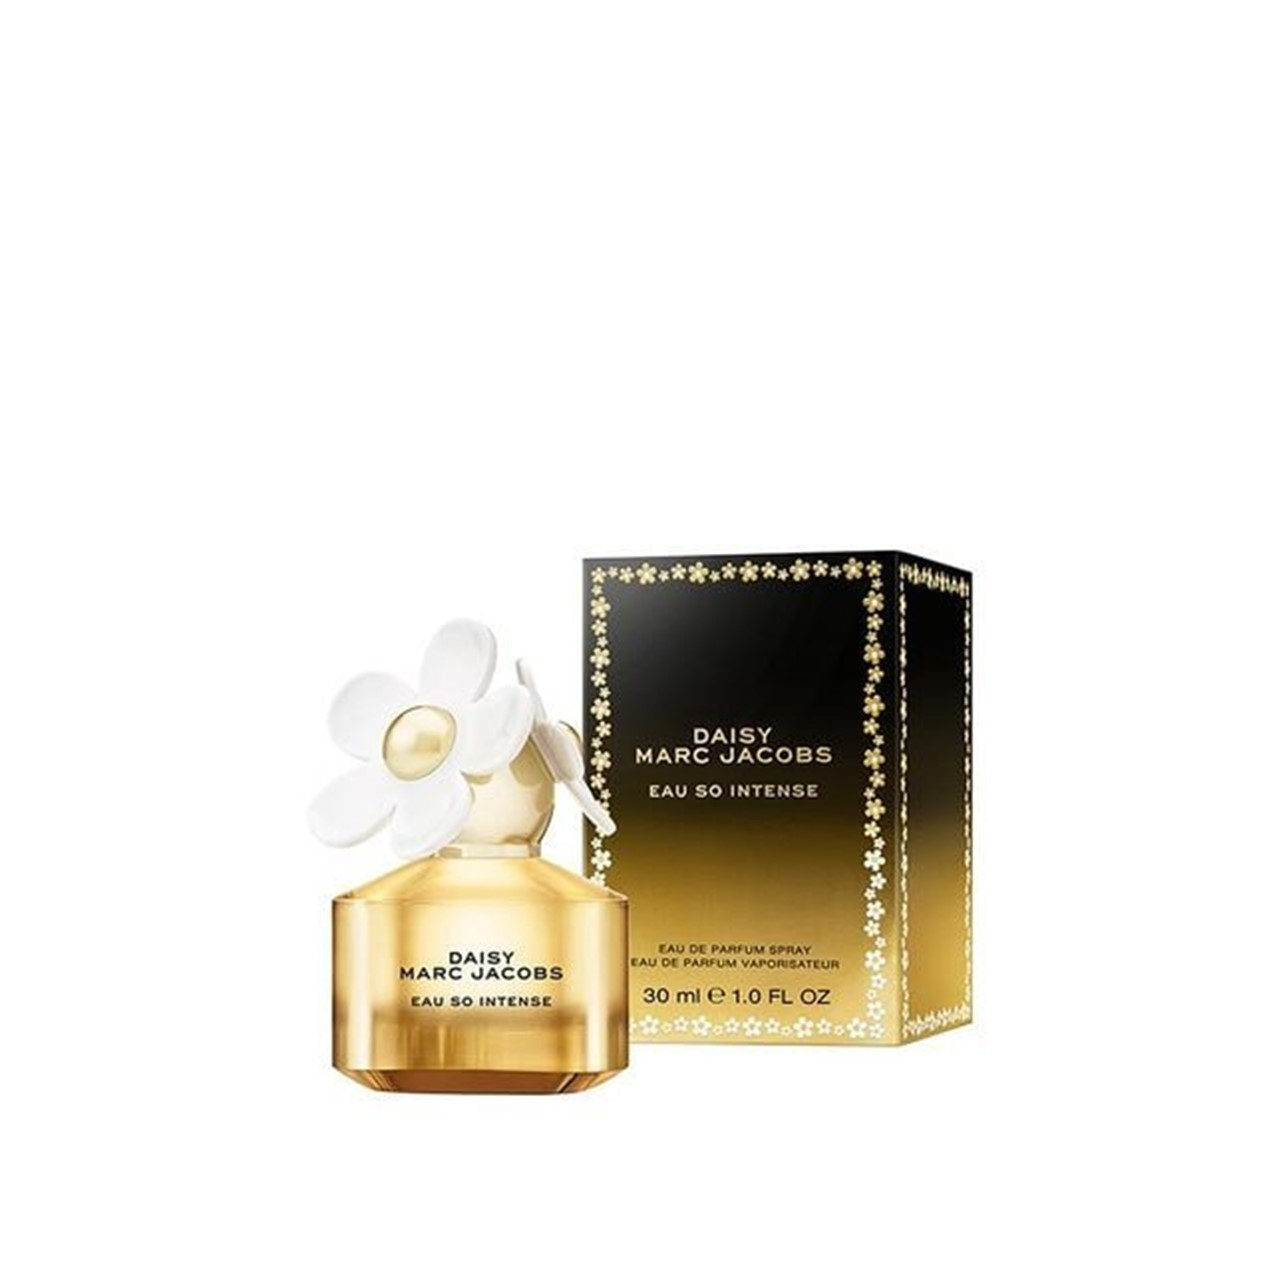 Marc Jacobs Daisy Eau So Intense Eau de Parfum 30ml (1.0fl oz)